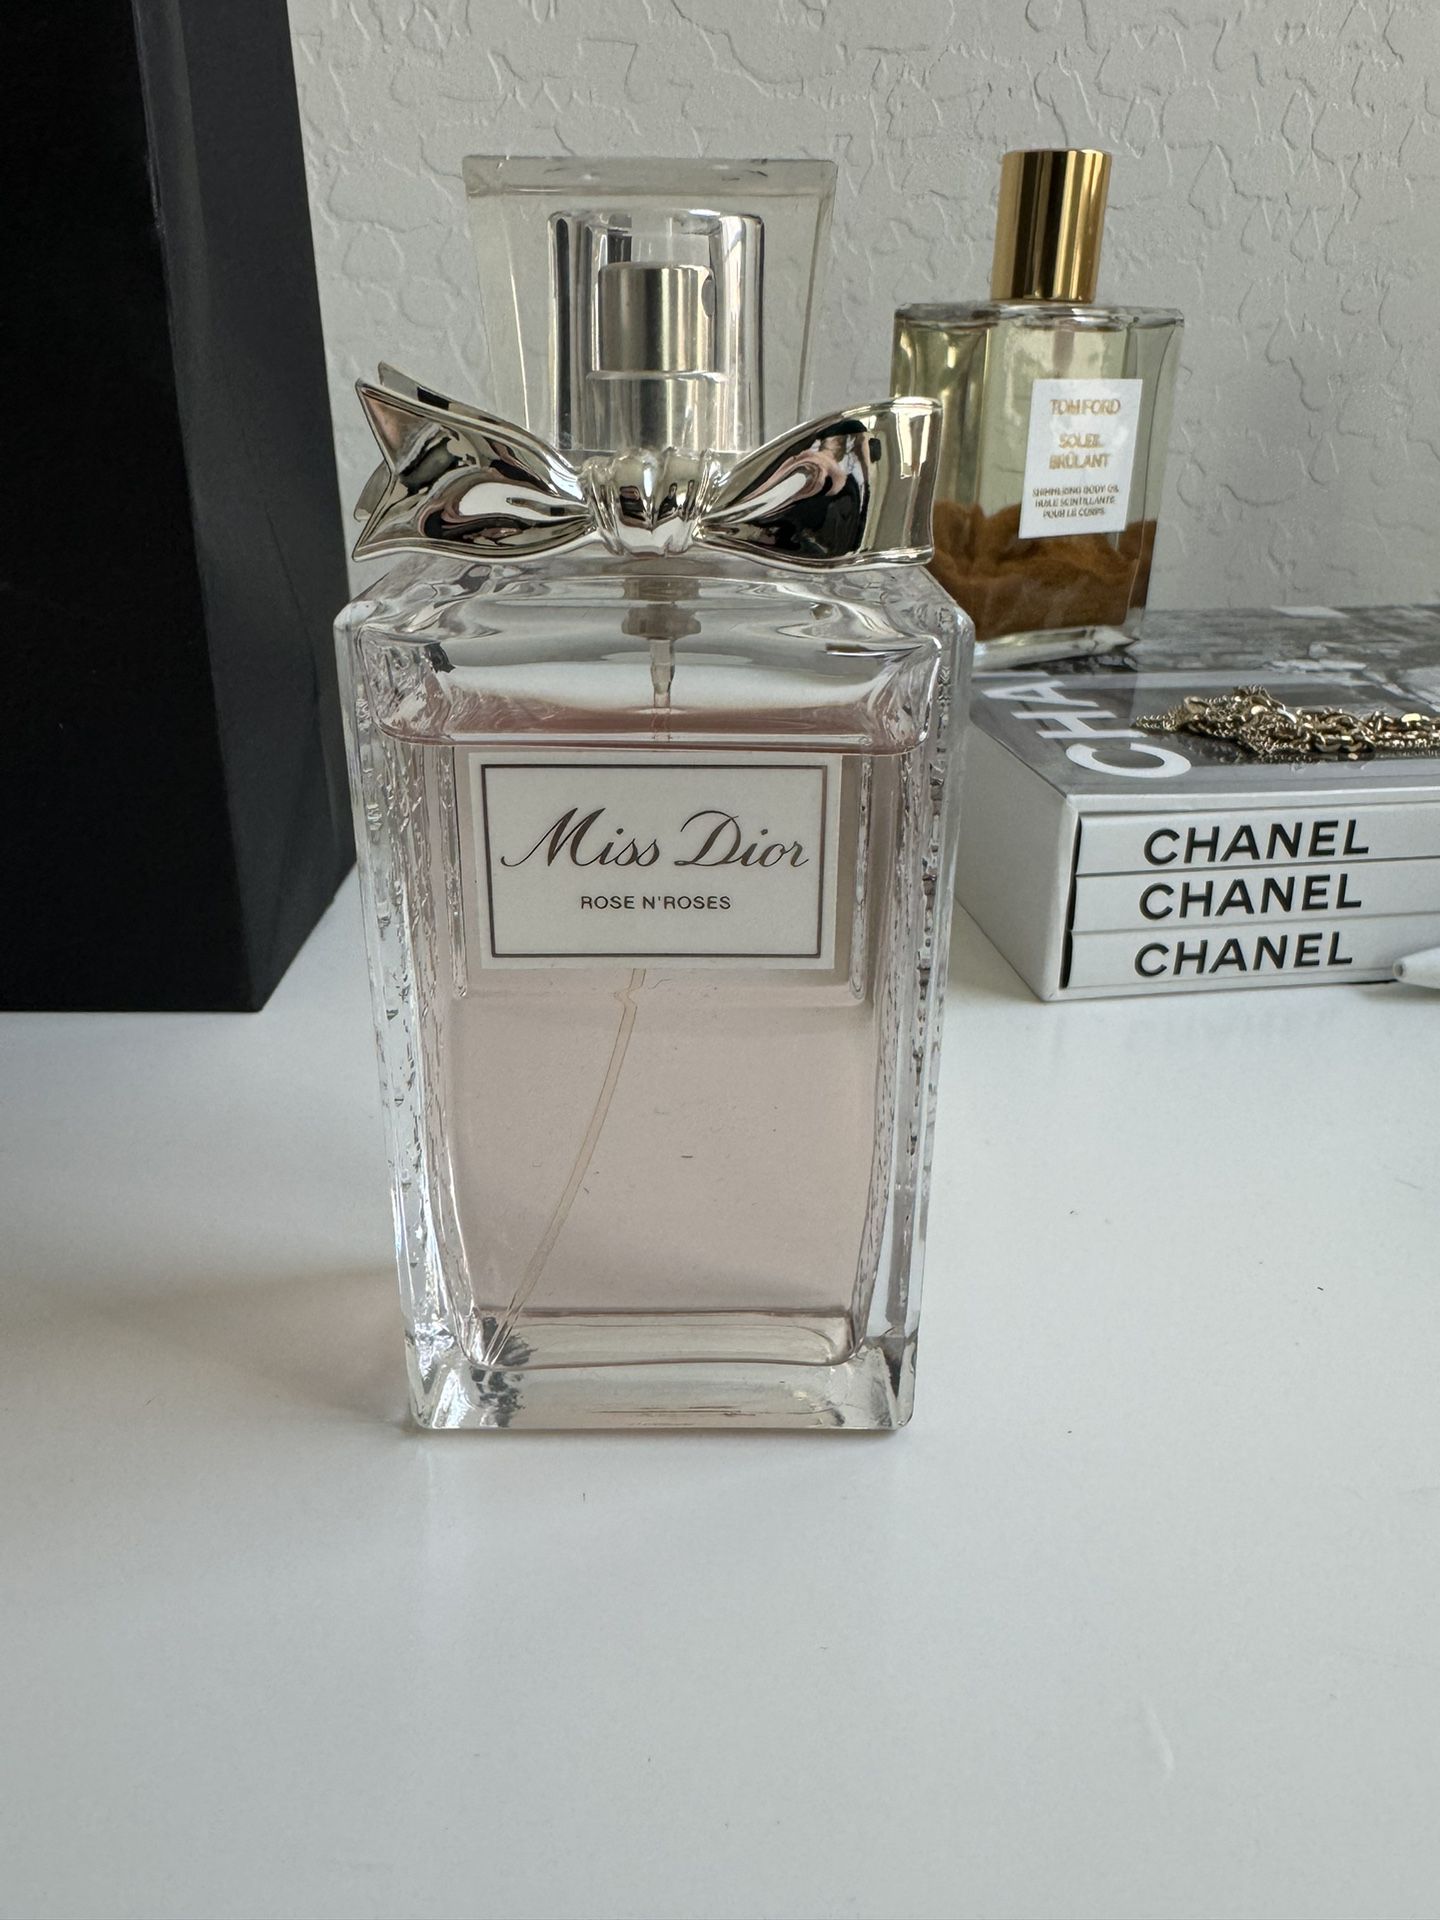 Miss Dior “Rose N Roses” Perfume